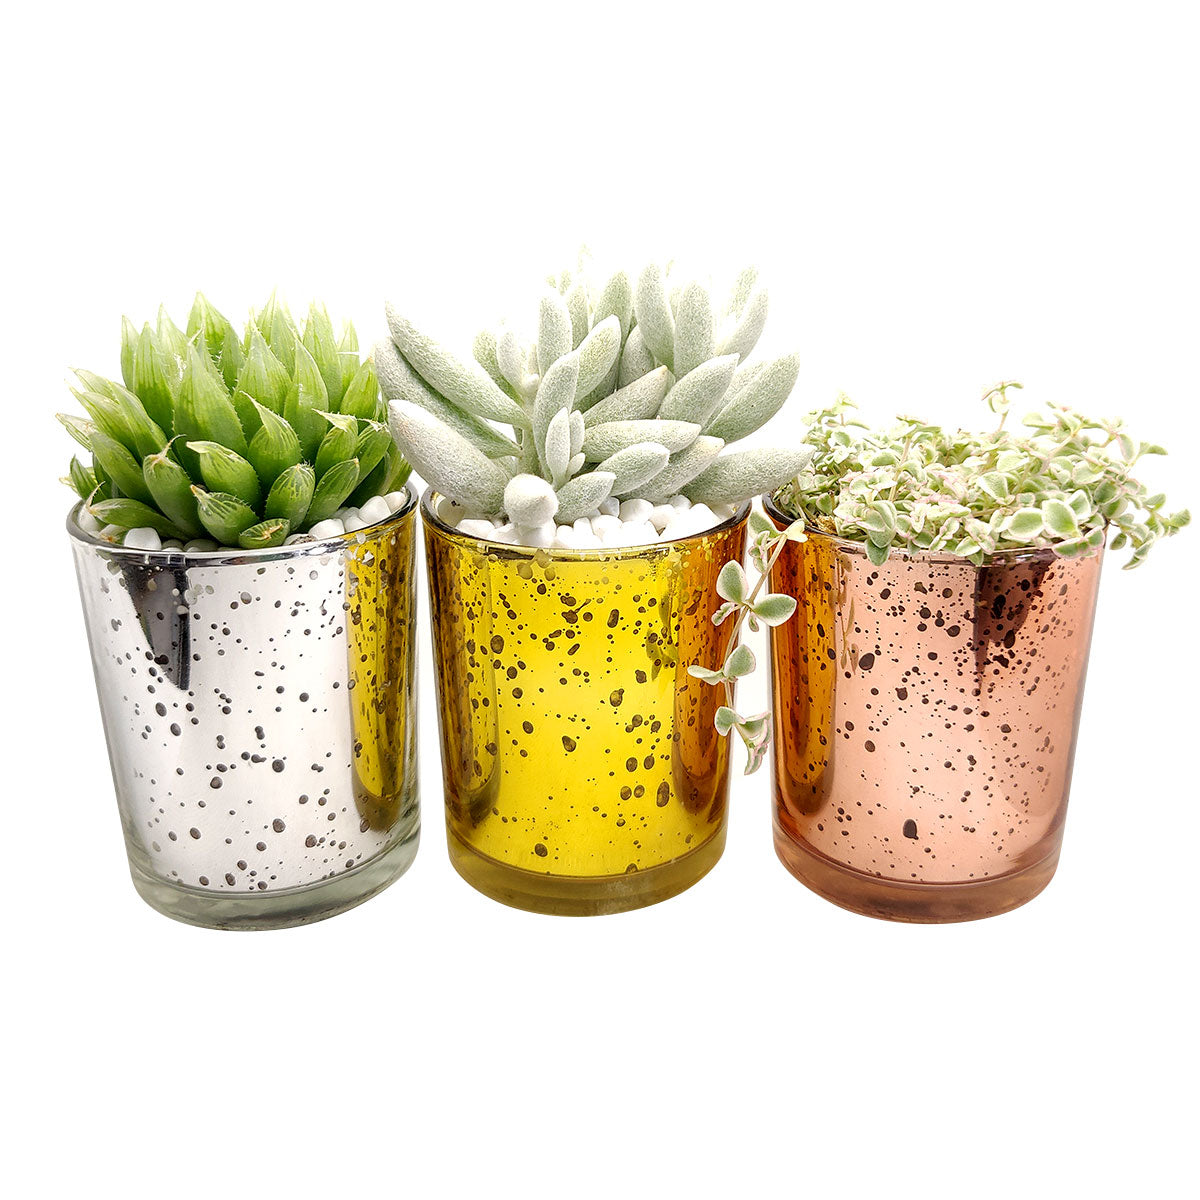 Pot for sale, Mini pot for succulent, Succulent pot decor ideas, Gold sparkly pot, Flower pot for sale, glass pots for planting, succulent gift for holiday